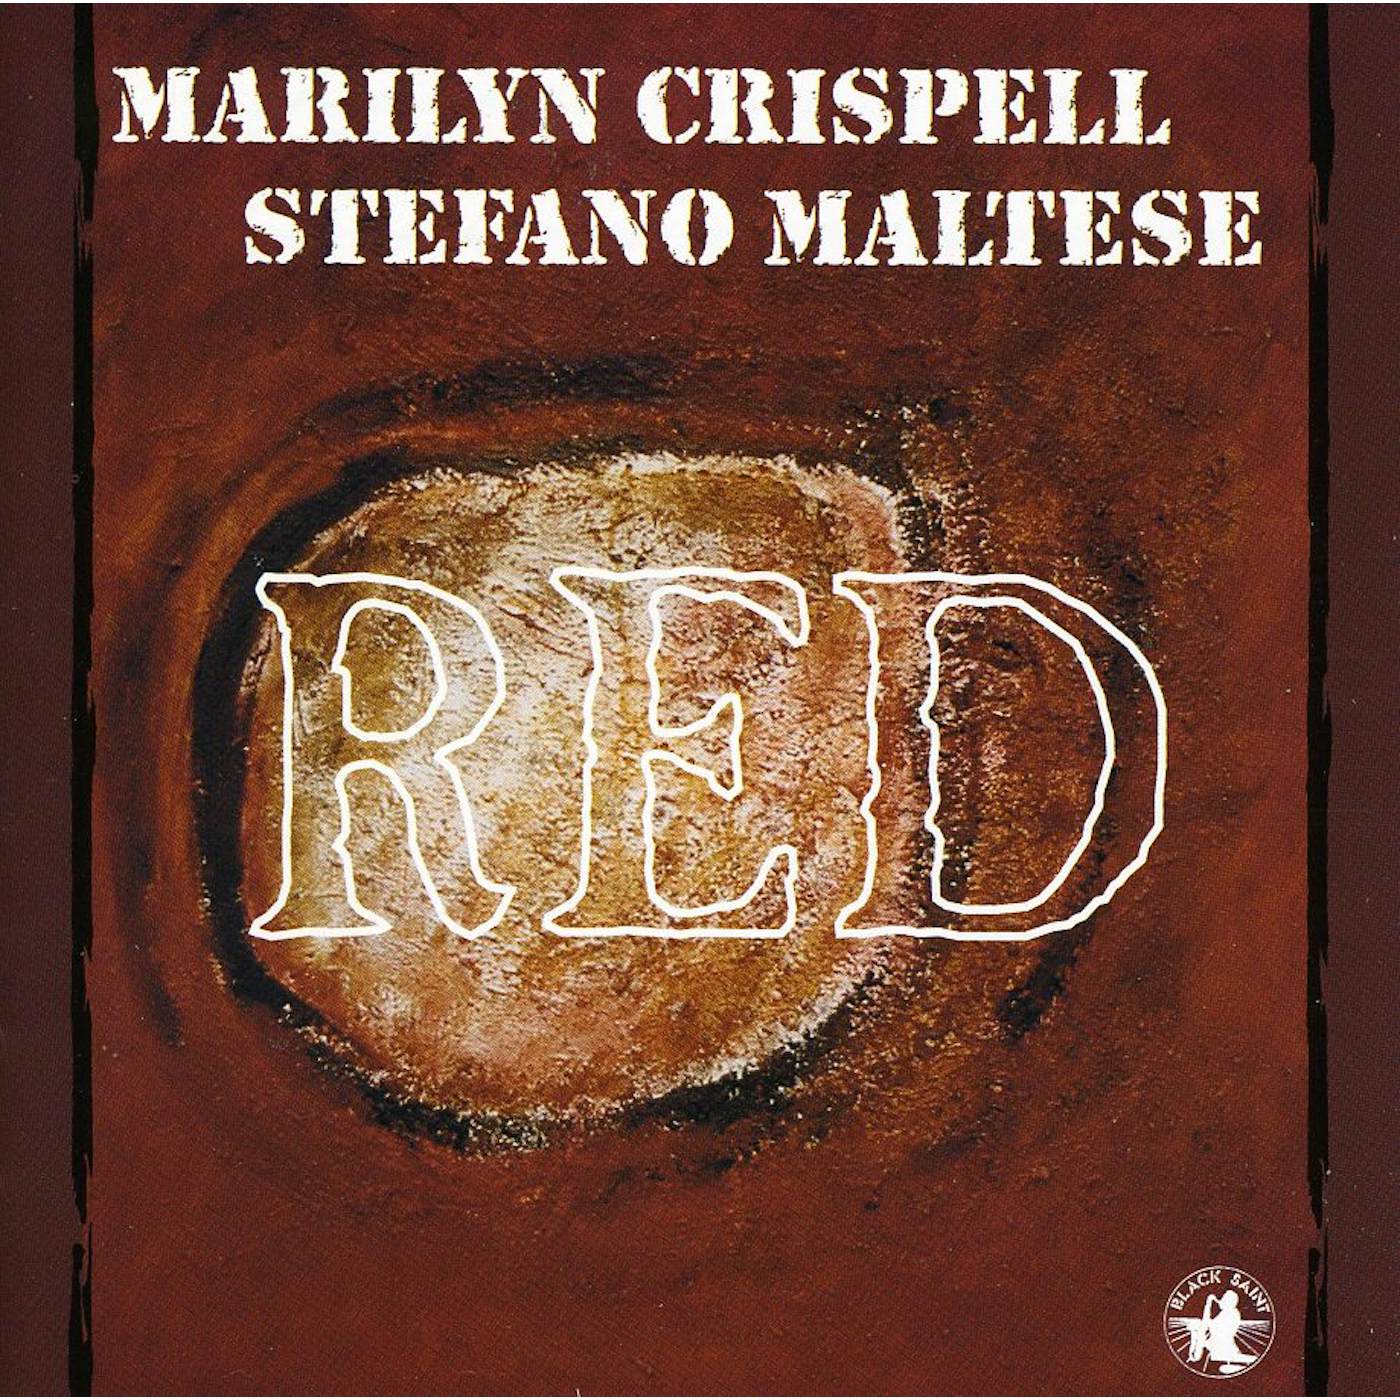 Marilyn Crispell RED CD